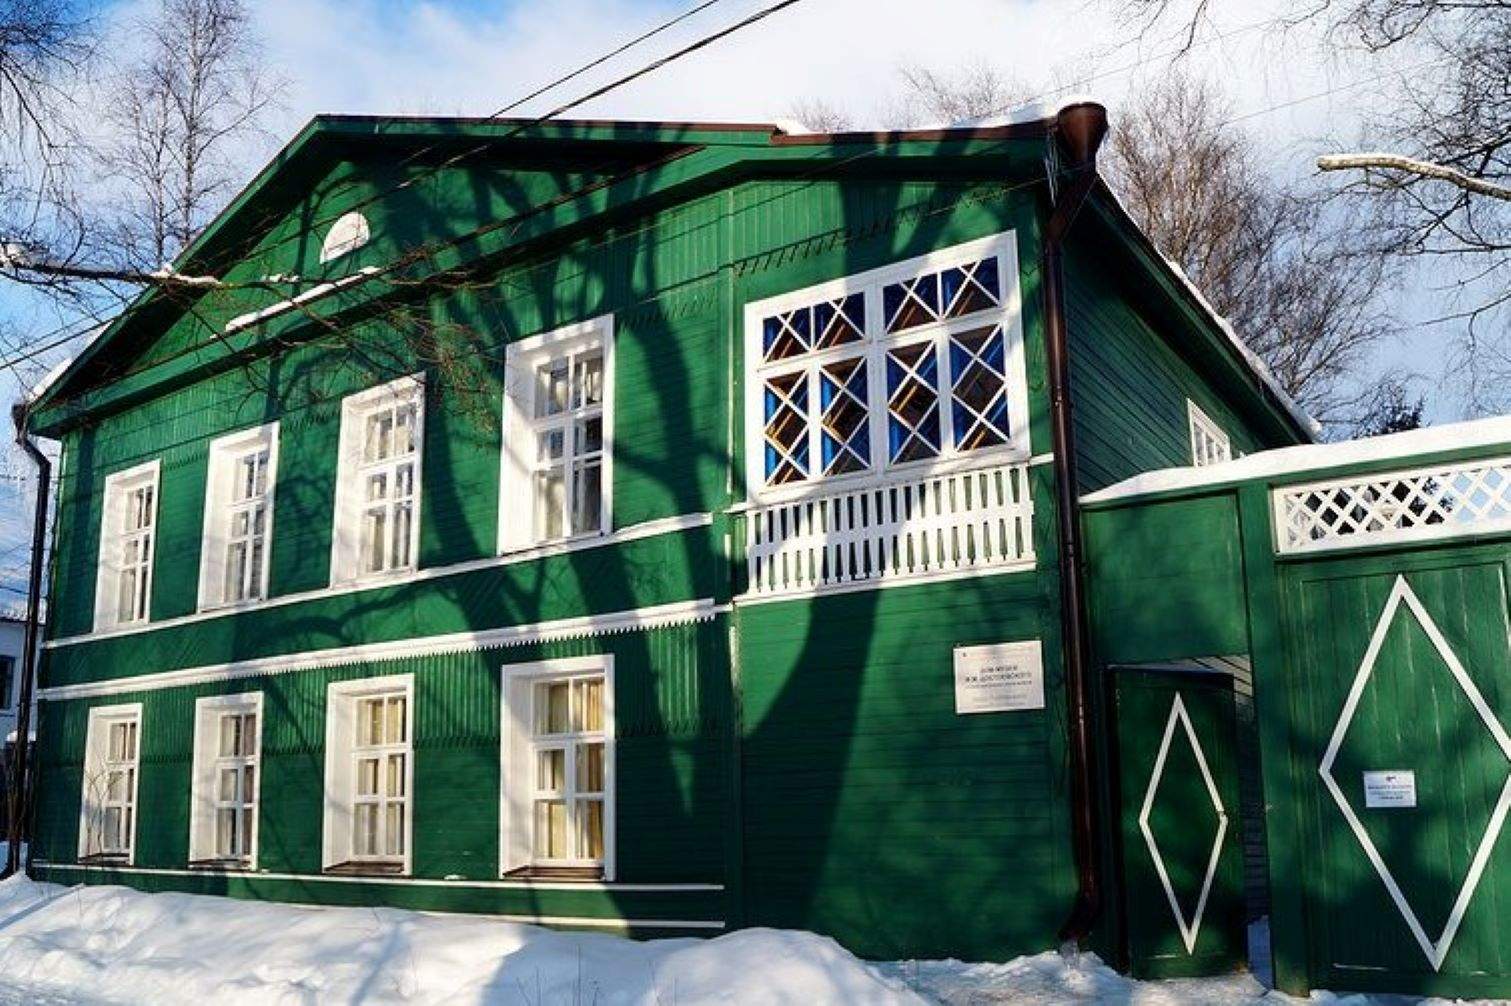 Дом-музей ф. м. Достоевского